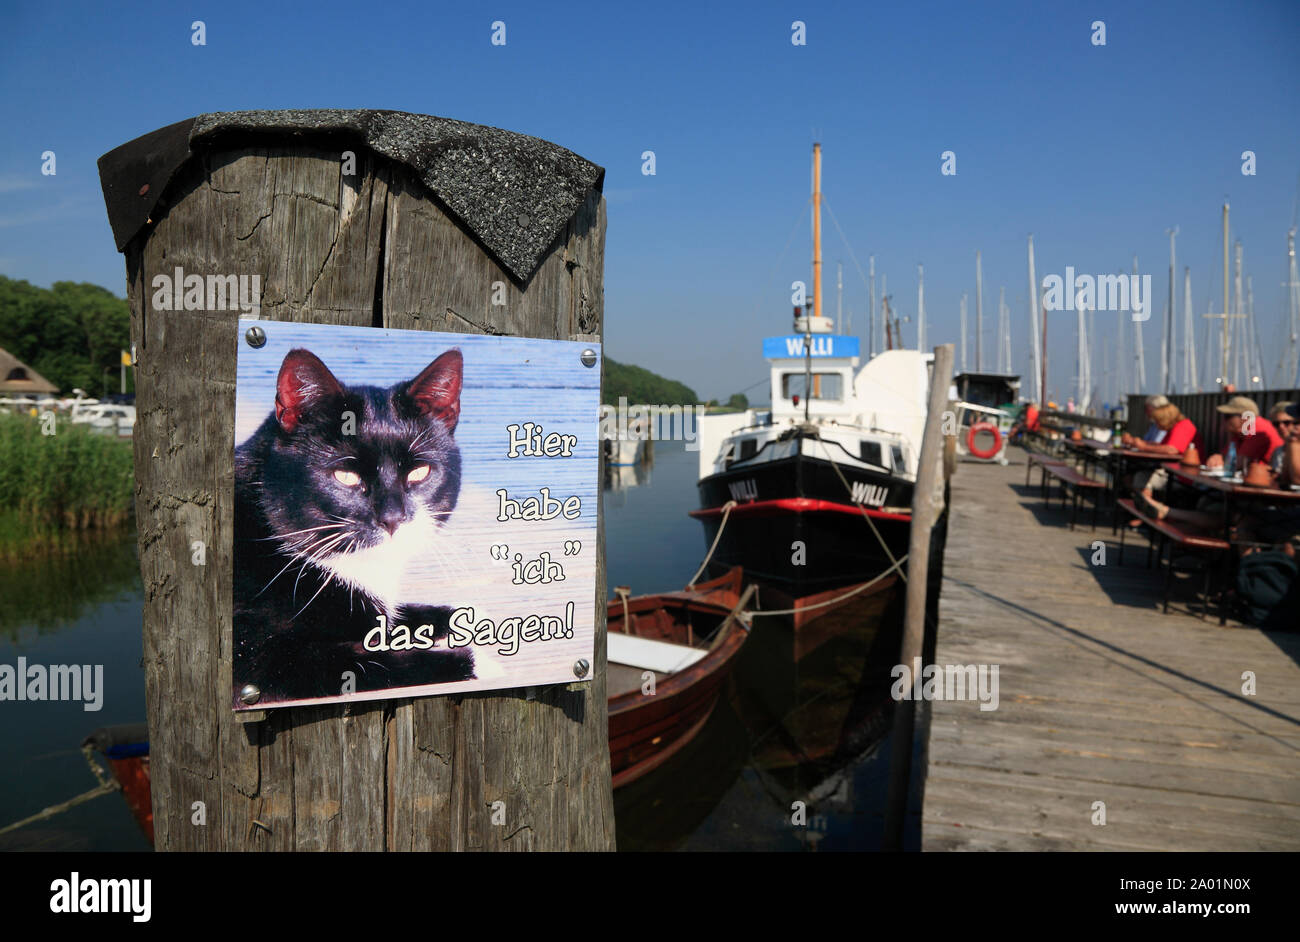 Kloster harbour, signe sur un ponton de bateau de poisson fumé de l'île de Hiddensee, WILLI, mer Baltique, Mecklembourg Poméranie occidentale, l'Allemagne, de l'Europe Banque D'Images